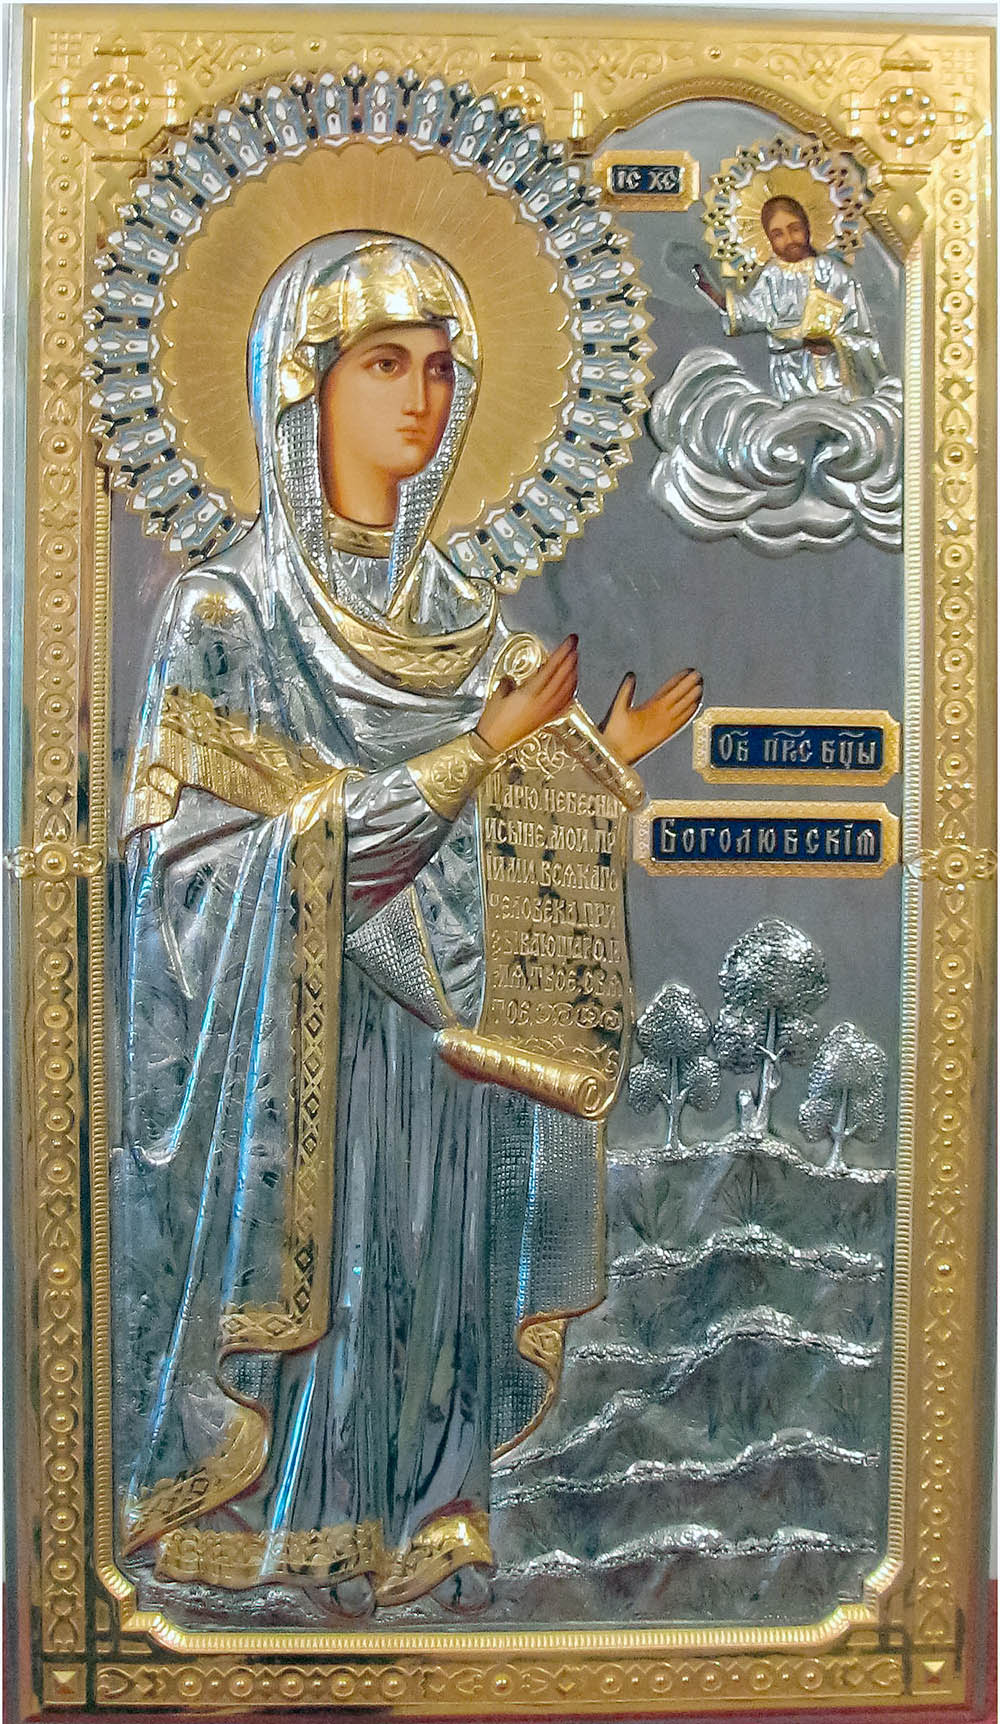 фото Боголюбская икона Божией Матери гальванопластика золото серебро большая храмовая икона